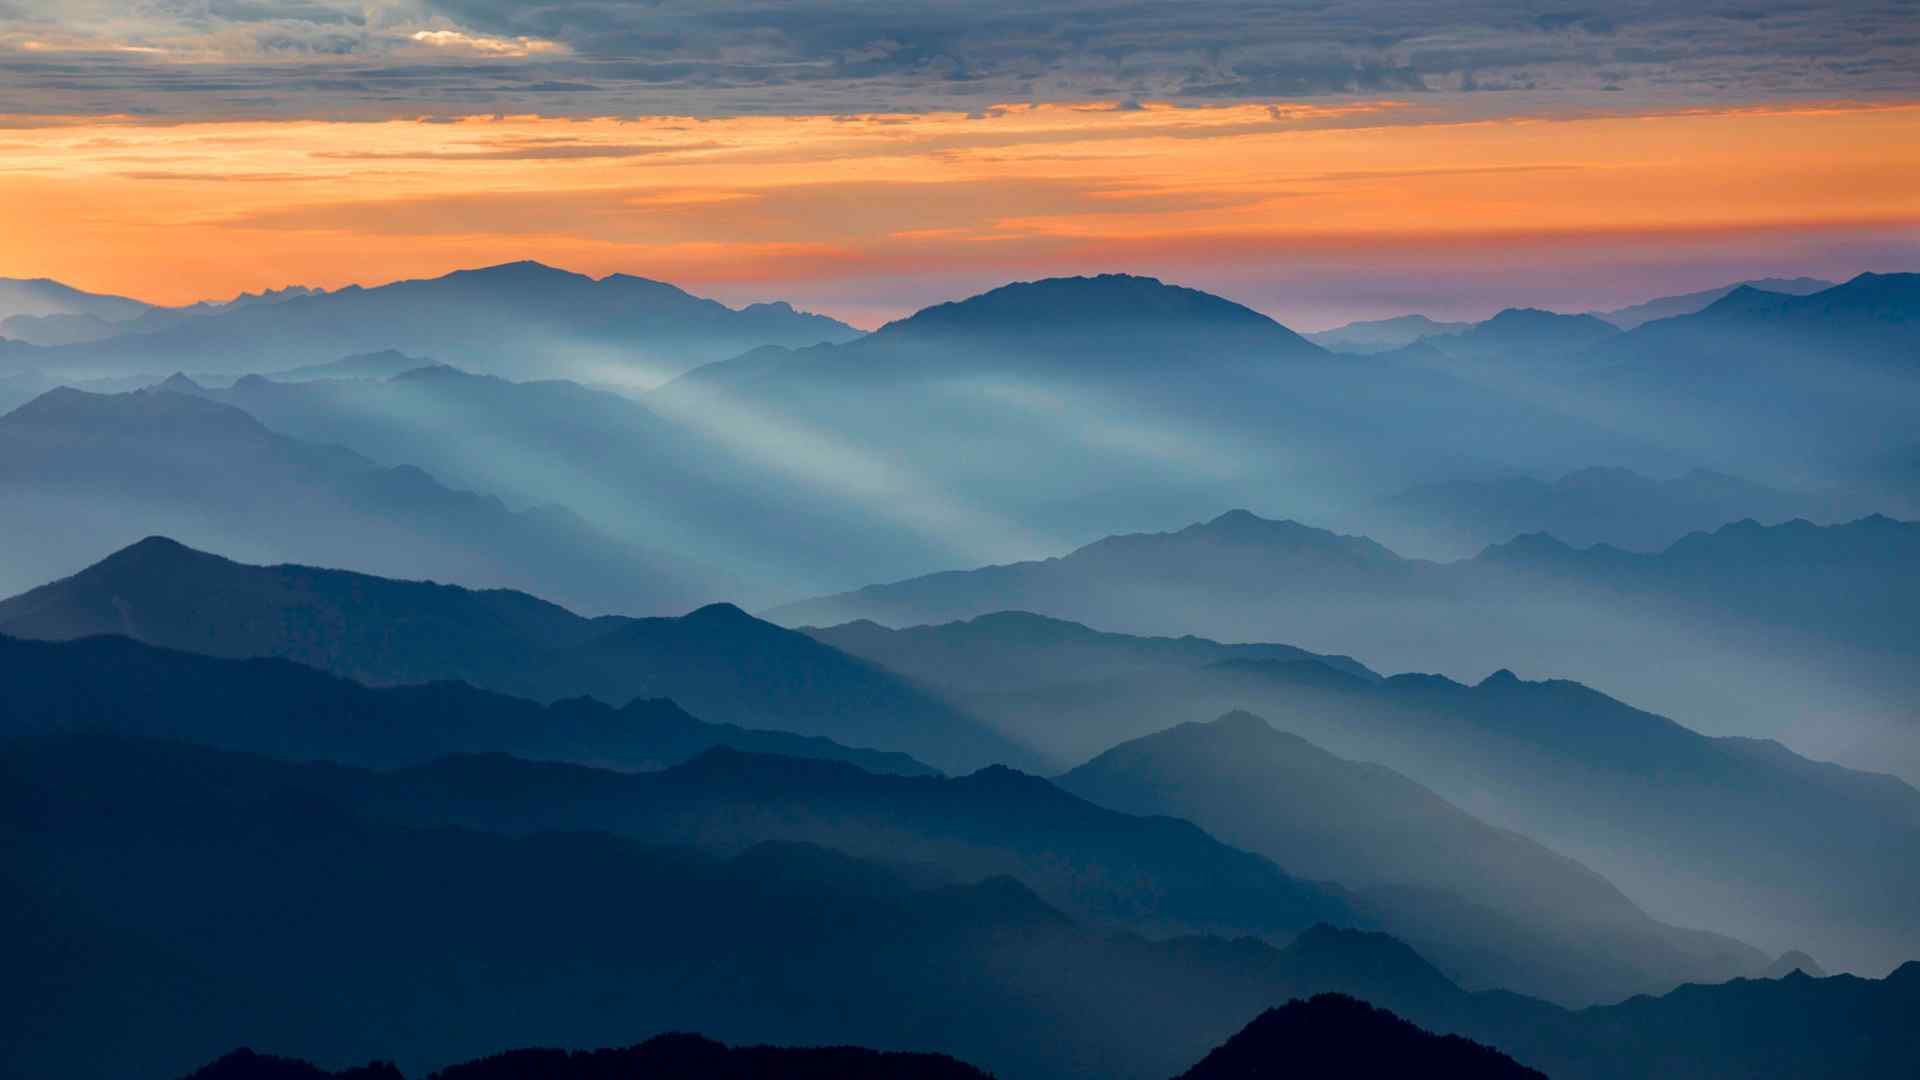 陕西太白山唯美日出风景图片高清摄影桌面壁纸